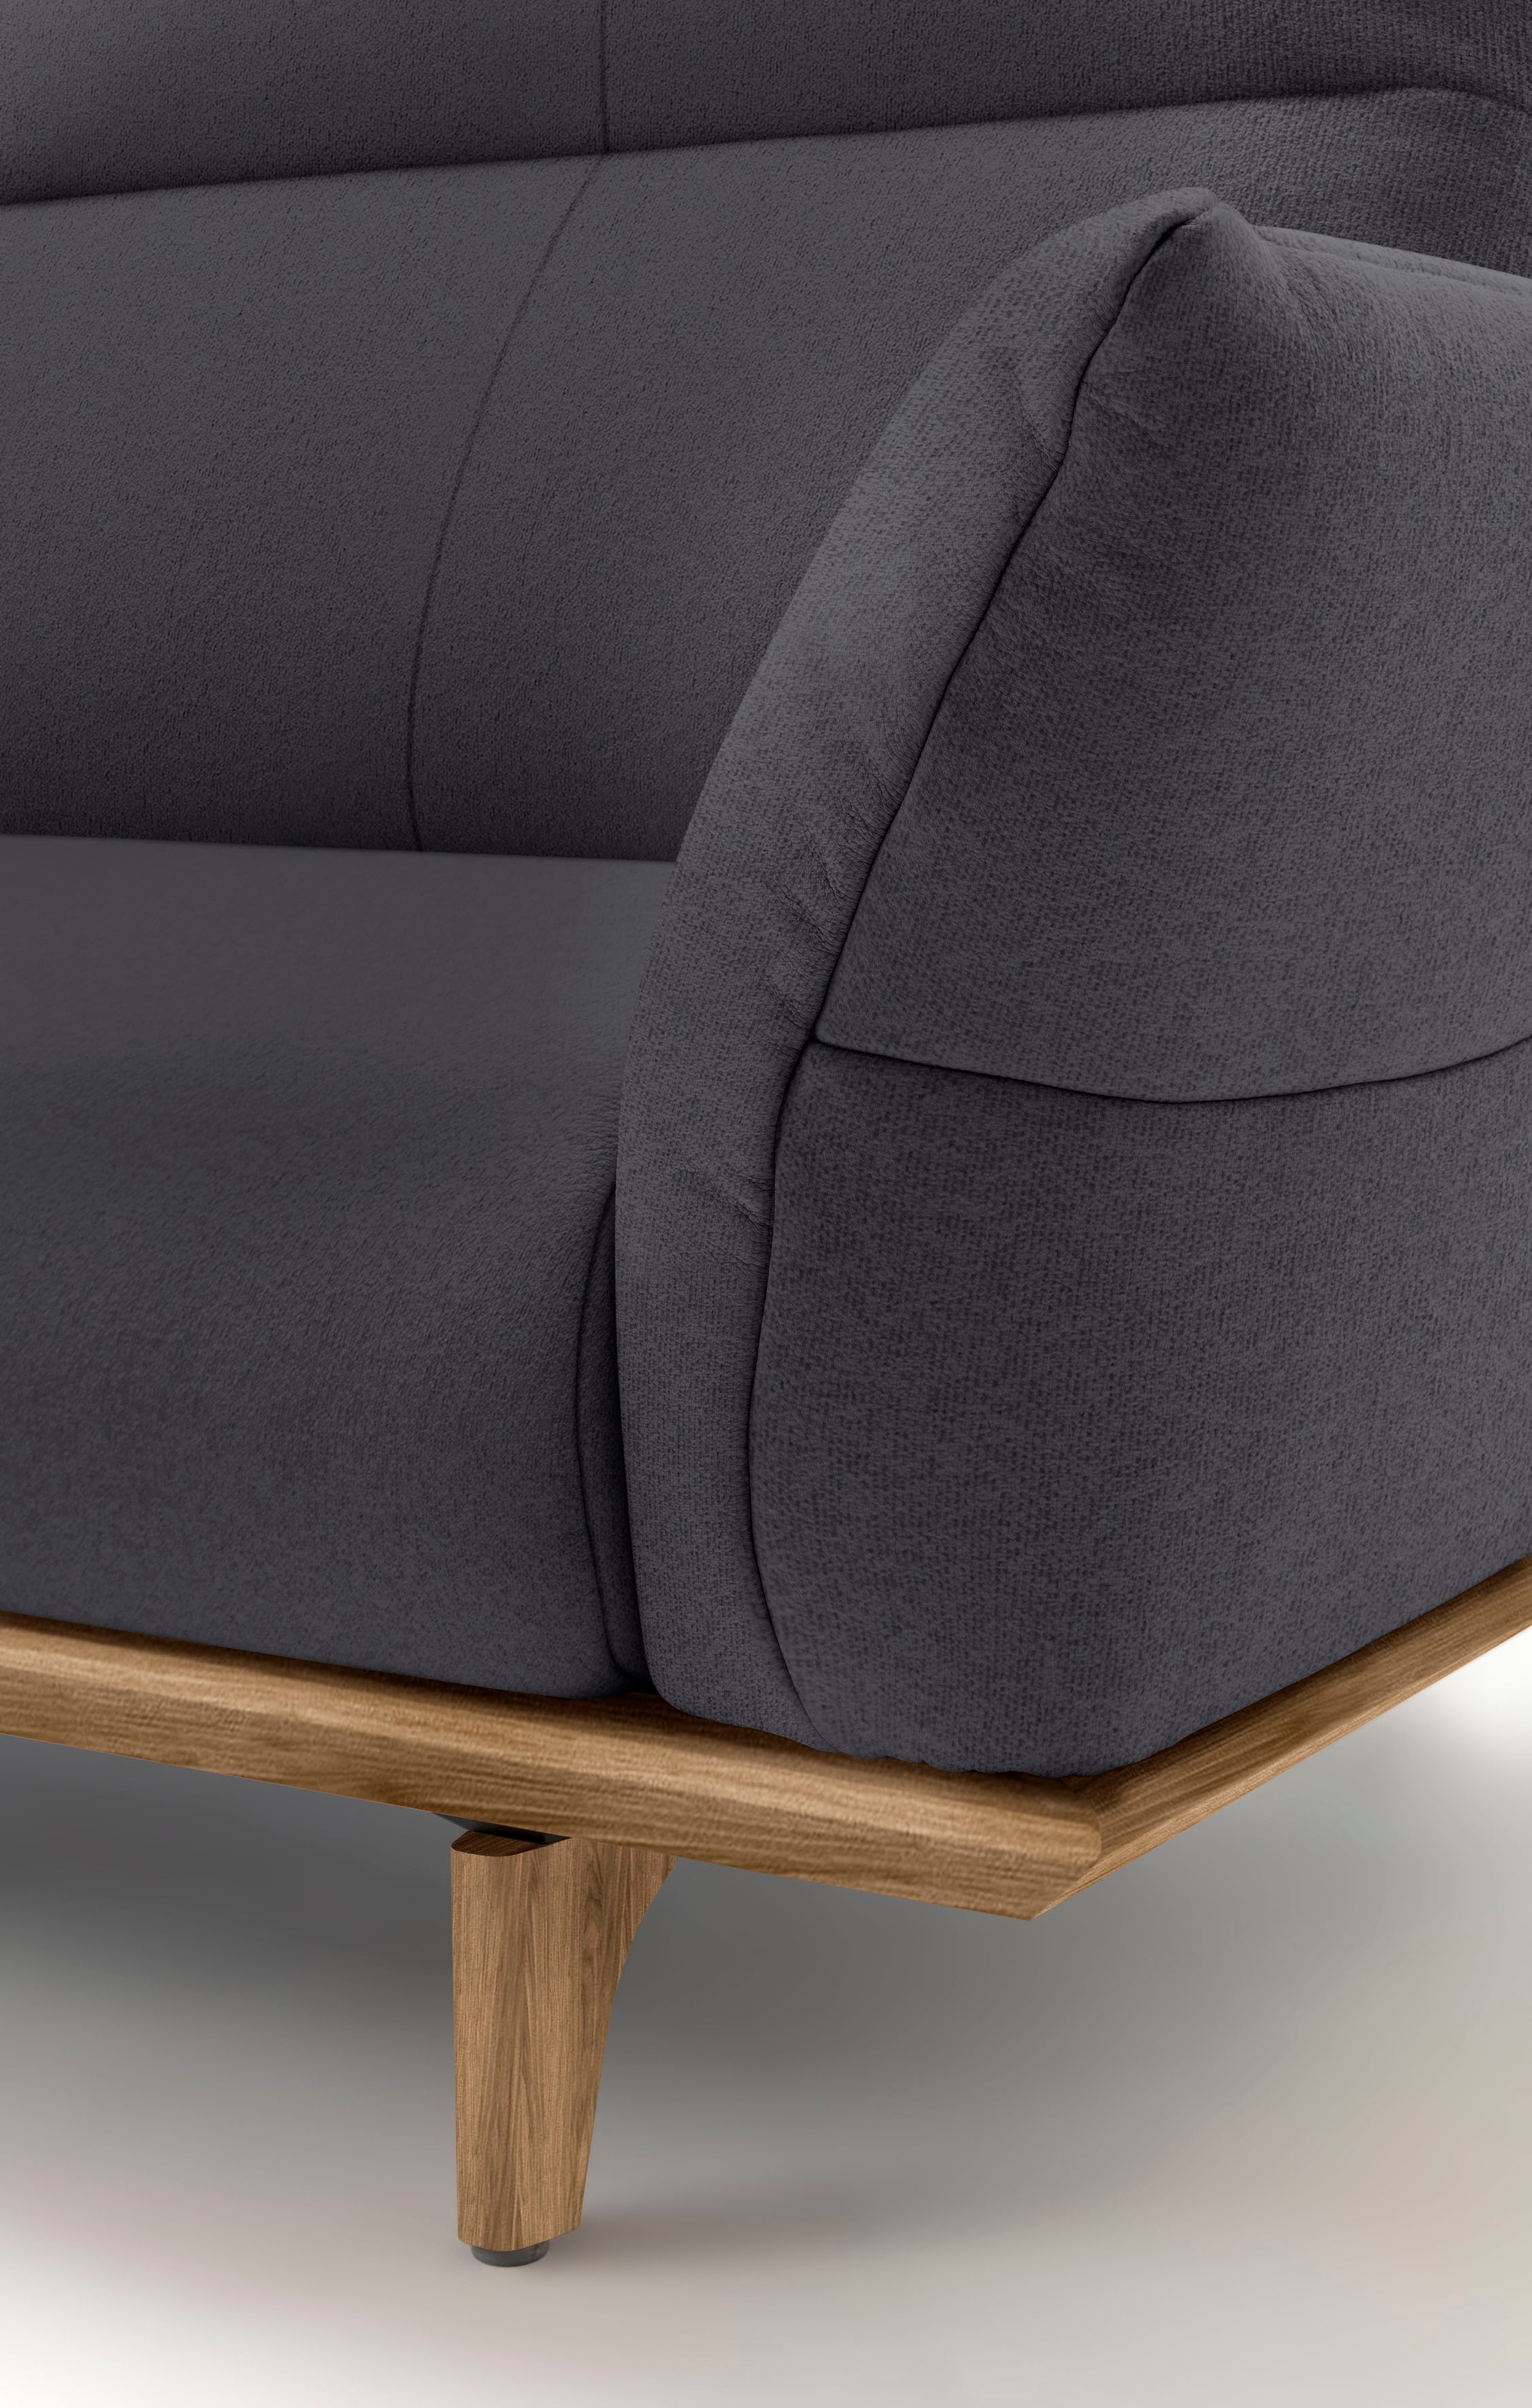 hülsta sofa 4-Sitzer »hs.460«, Sockel in Nussbaum, Füße Nussbaum, Breite 248 cm